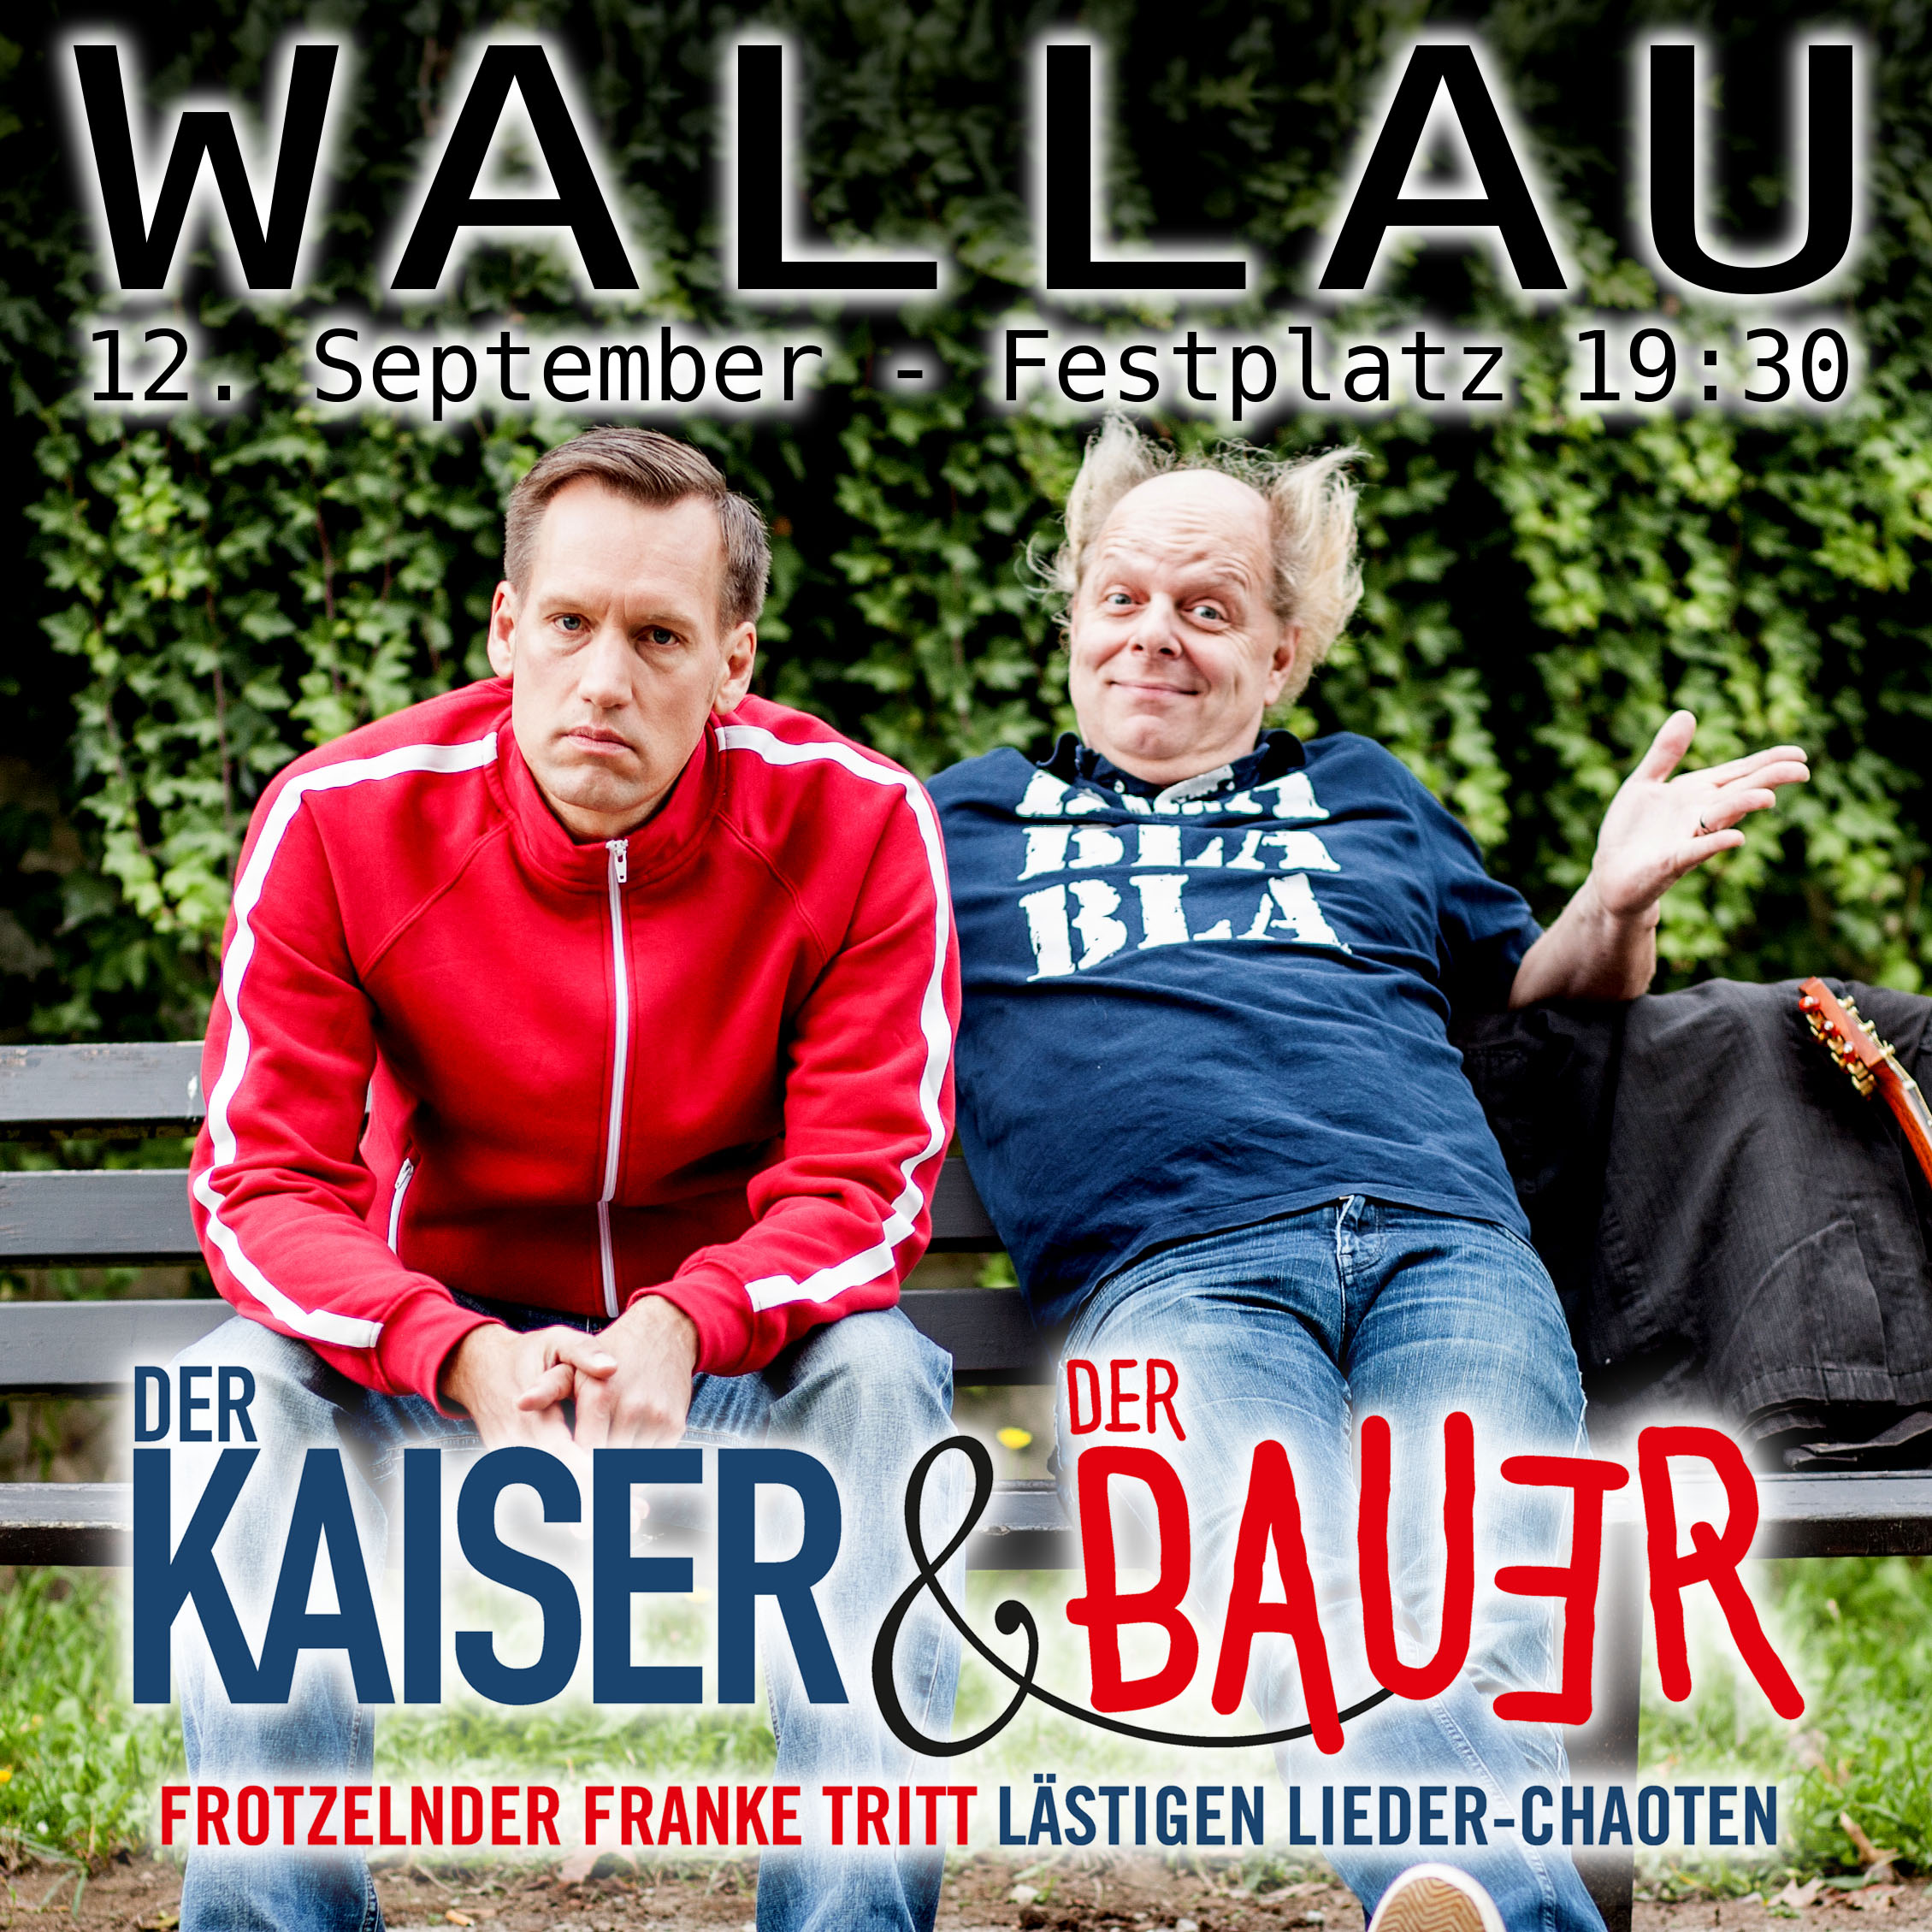 Atze Bauer Hofheim Wallau Festplatz Der Kaiser Der Bauer